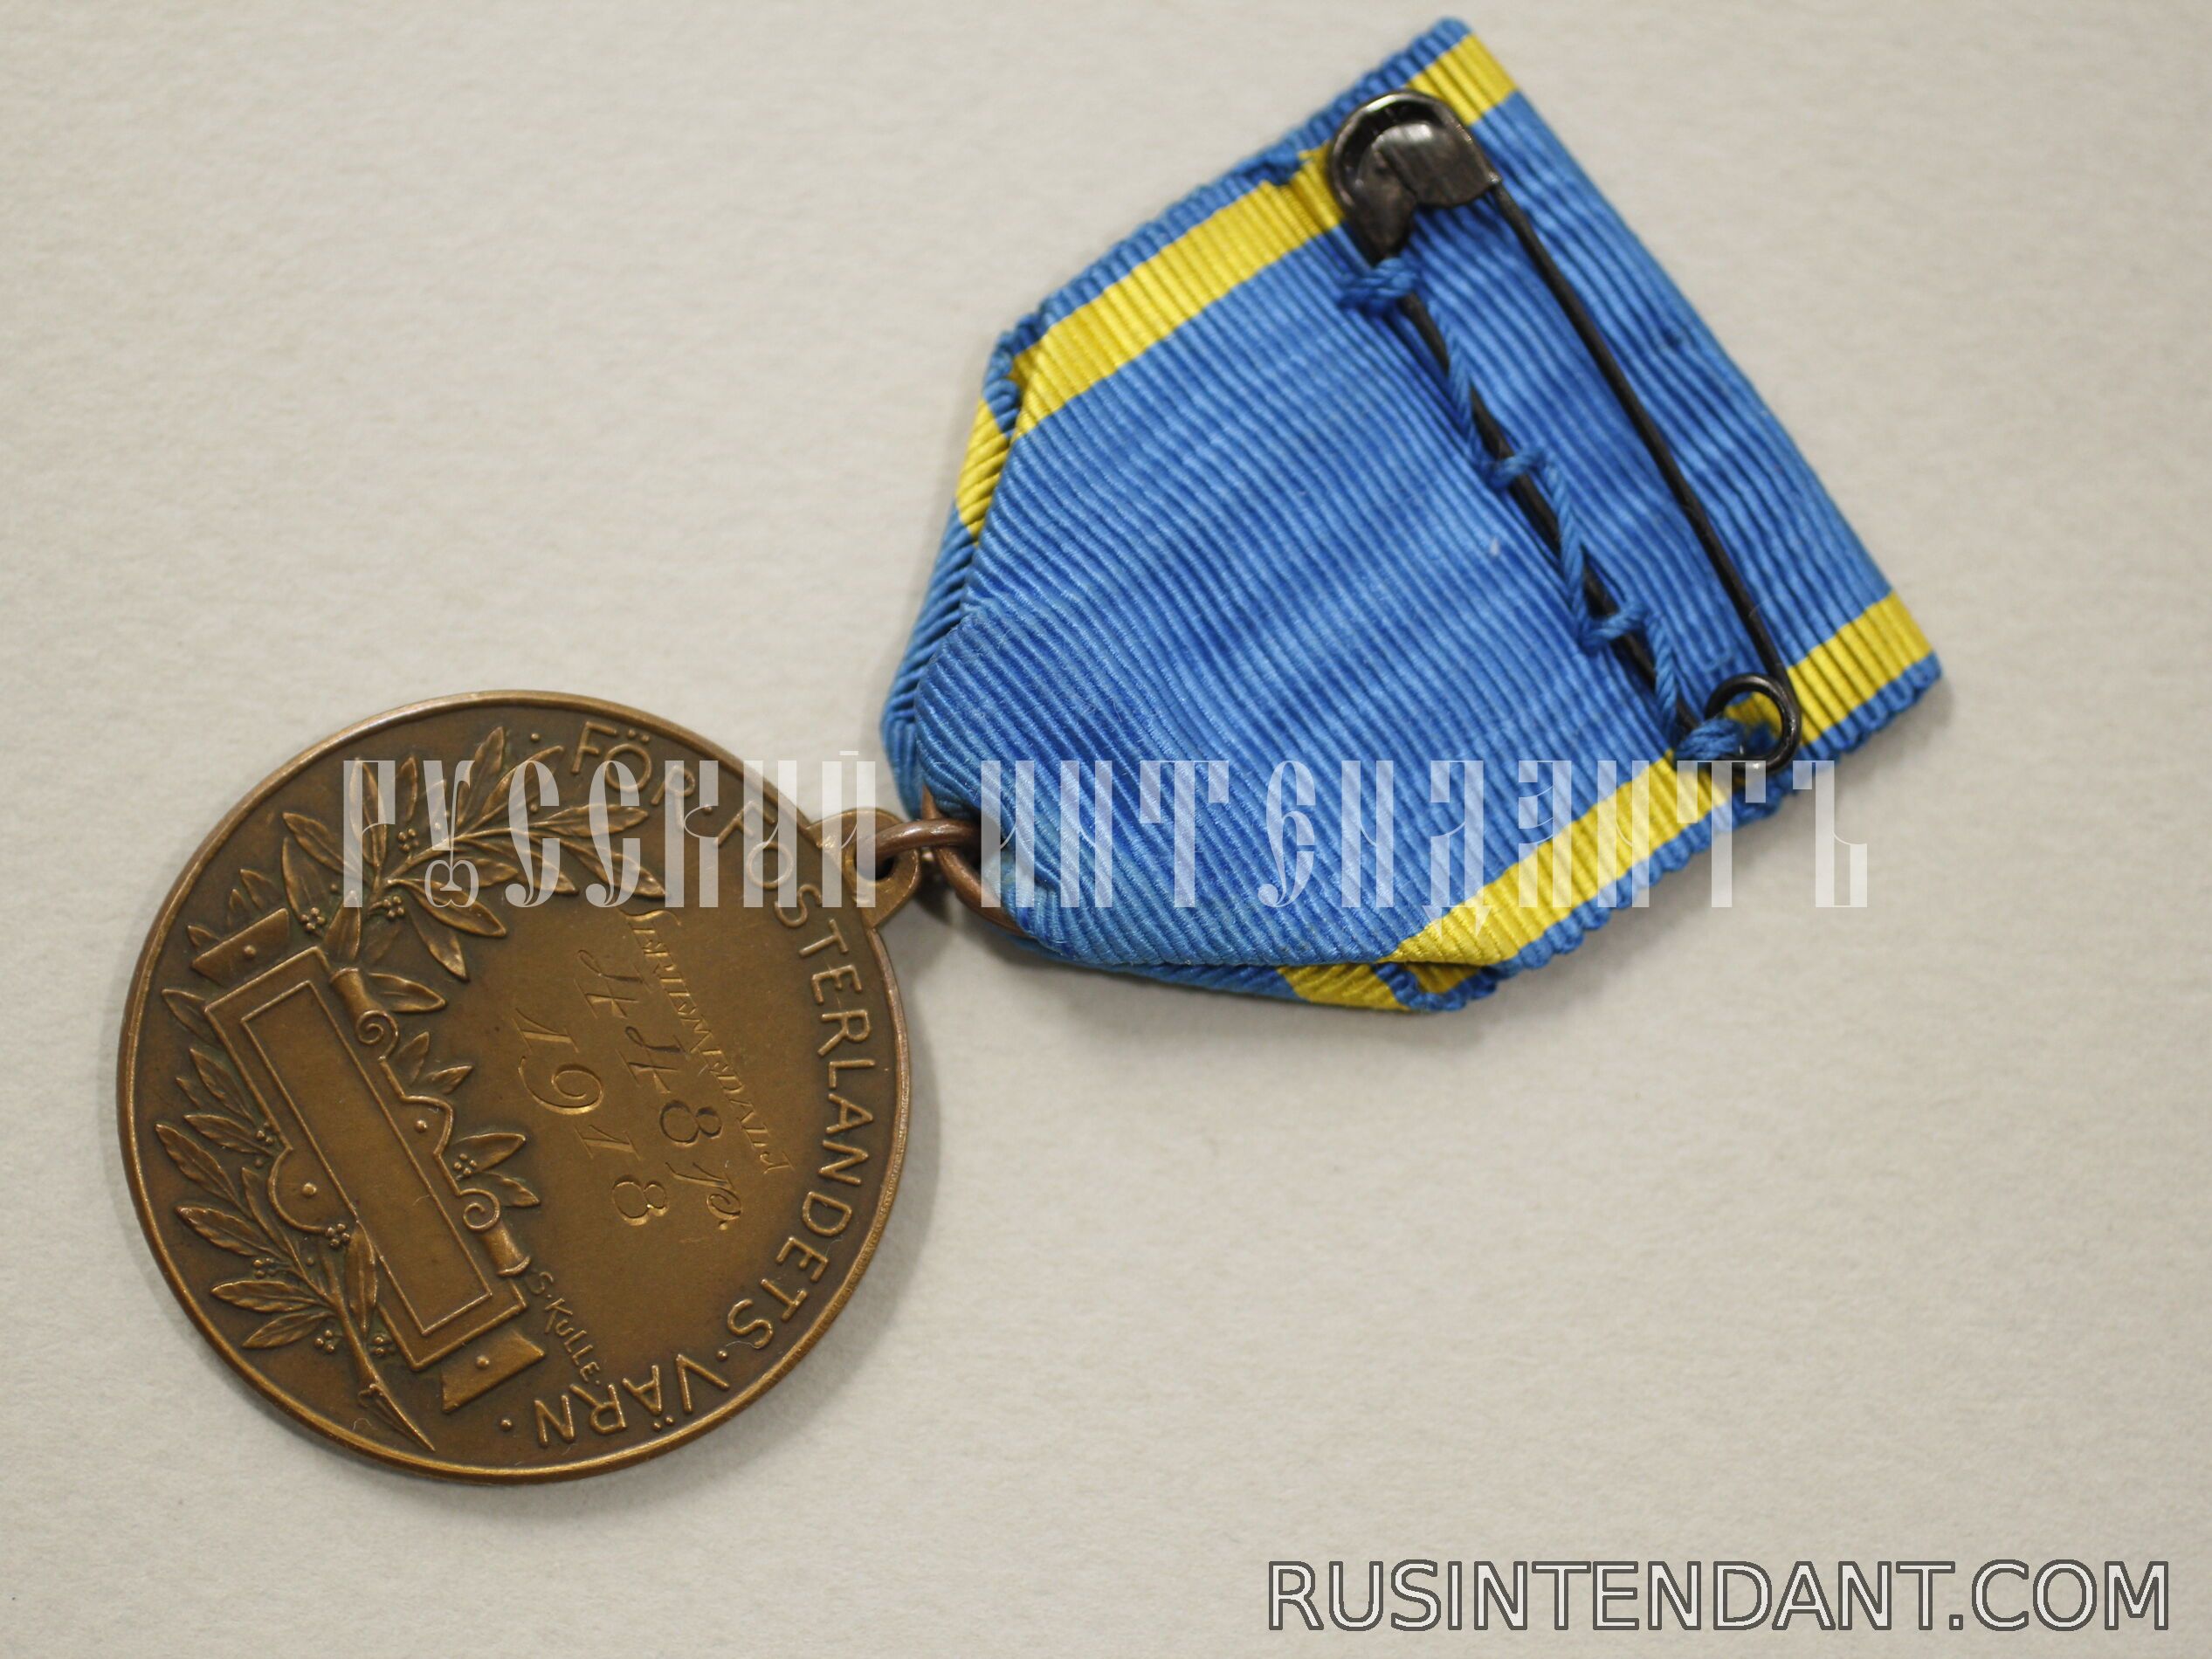 Фото 4: Медаль Центральной стрелковой ассоциации Стокгольма 